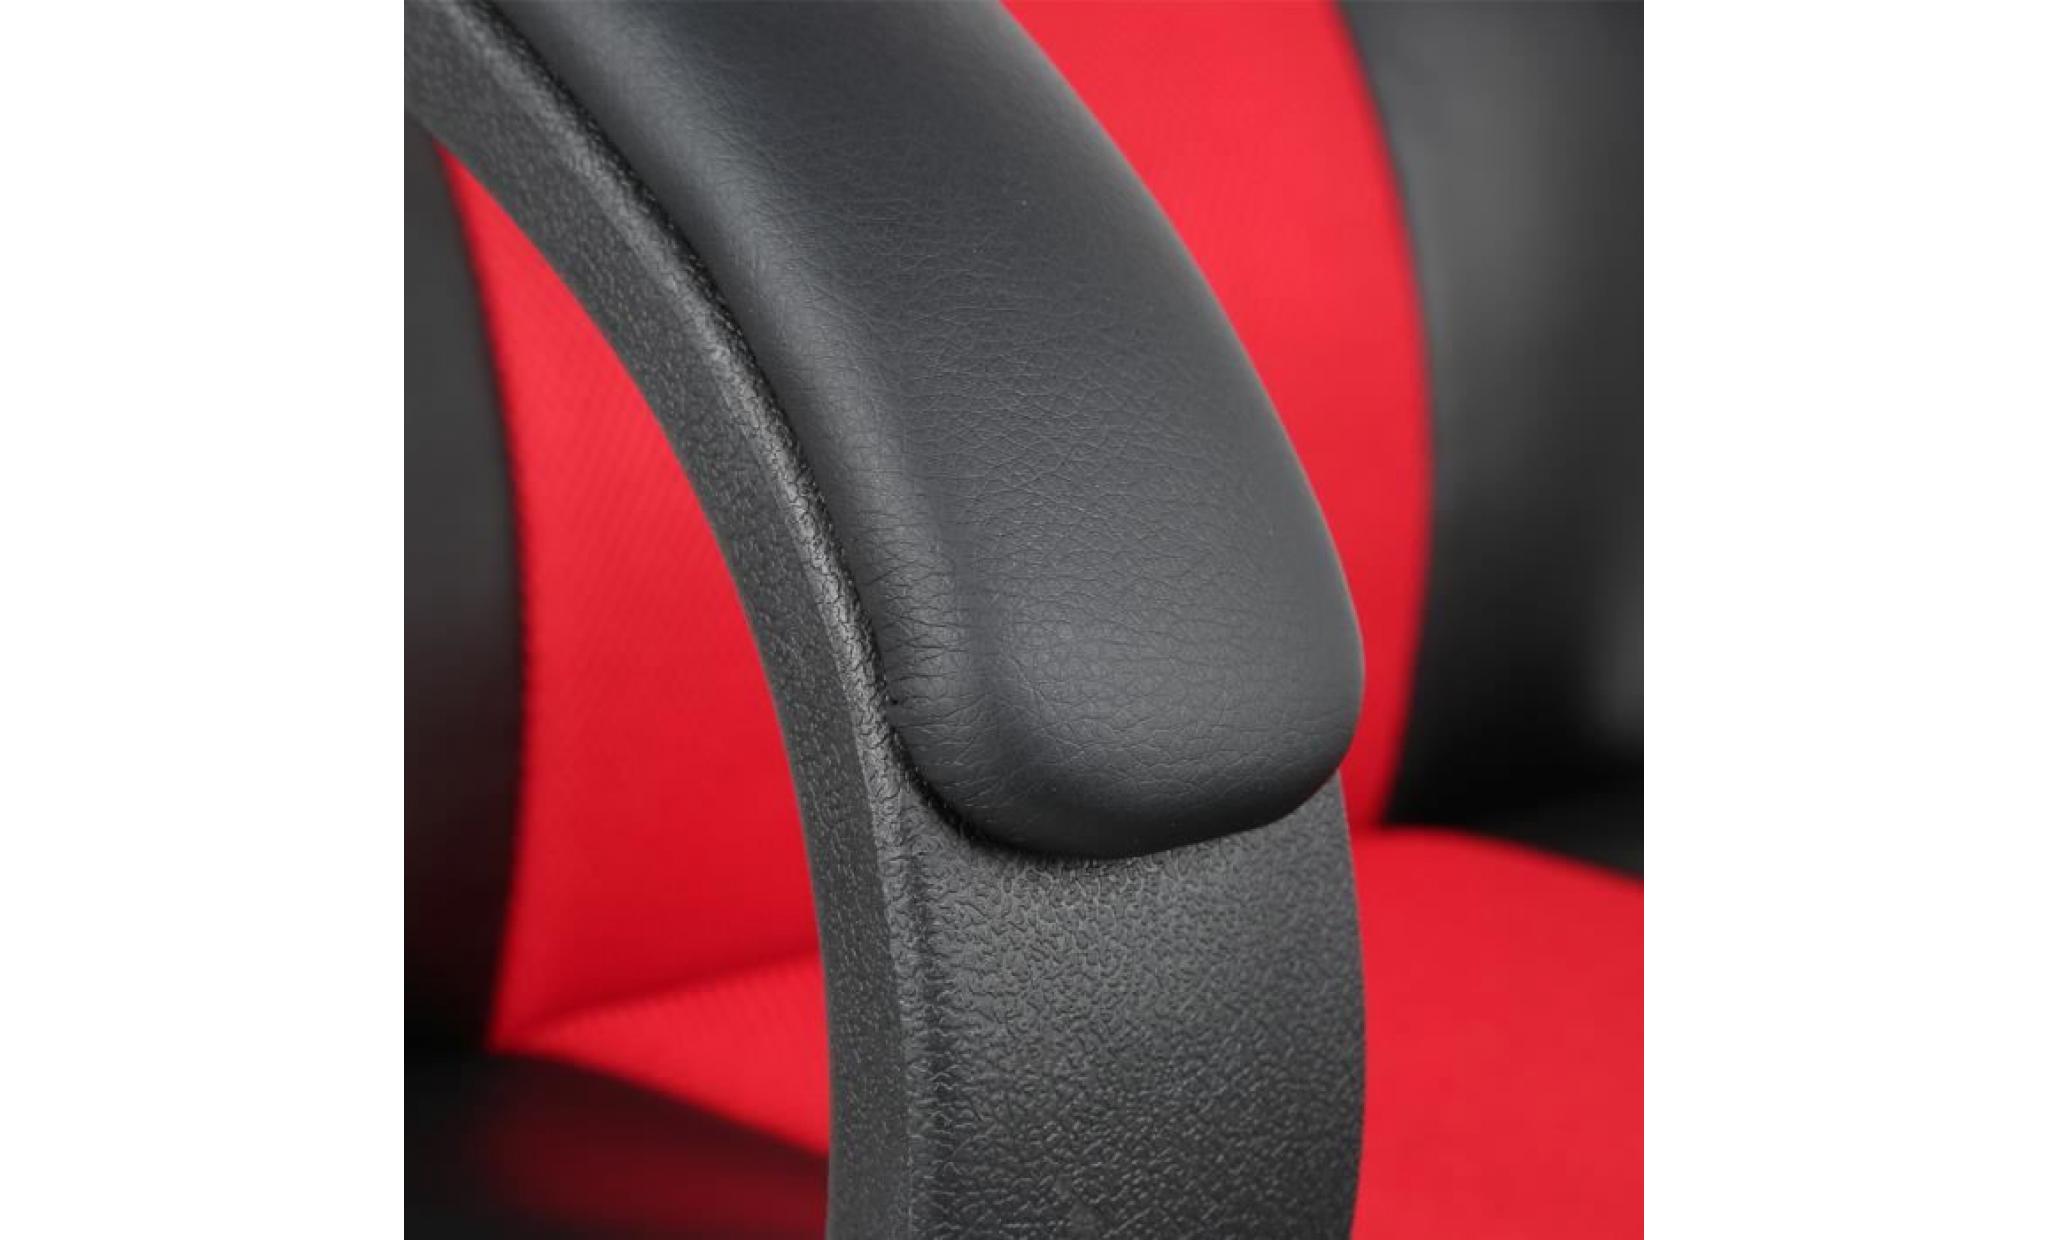 fauteuil gamer design baquet   similicuir noir et tissu rouge    51*58 *（114 120）cm pas cher